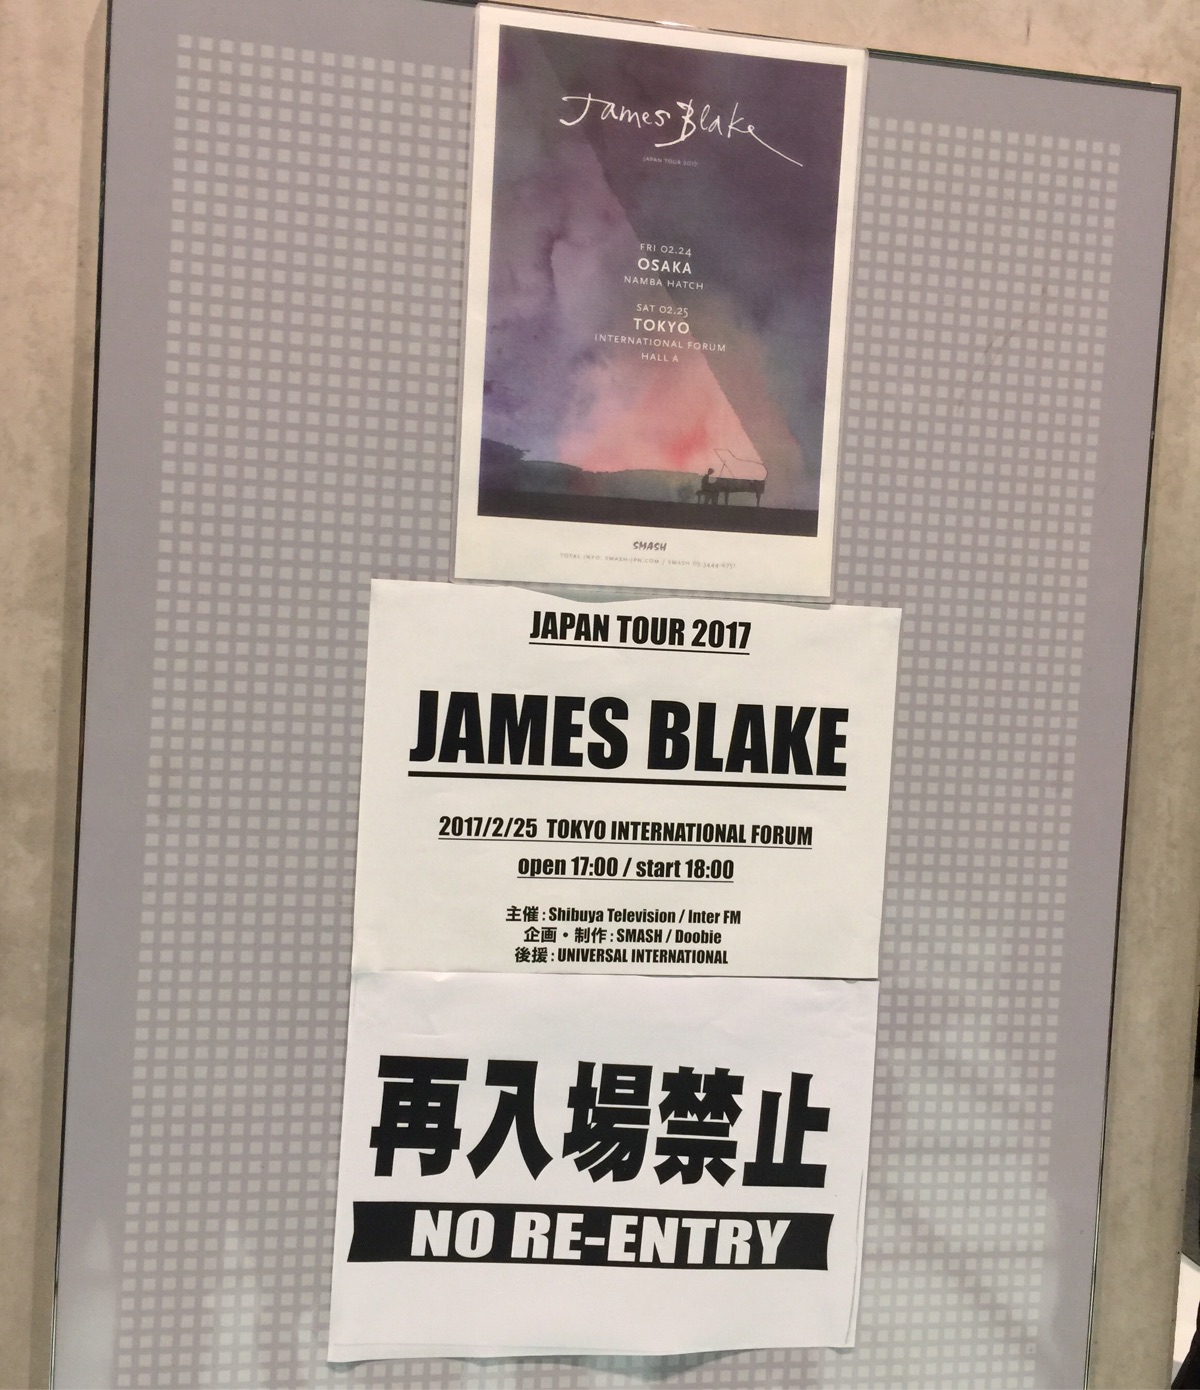 James Blake Japan Tour 2017 at 国際フォーラム A